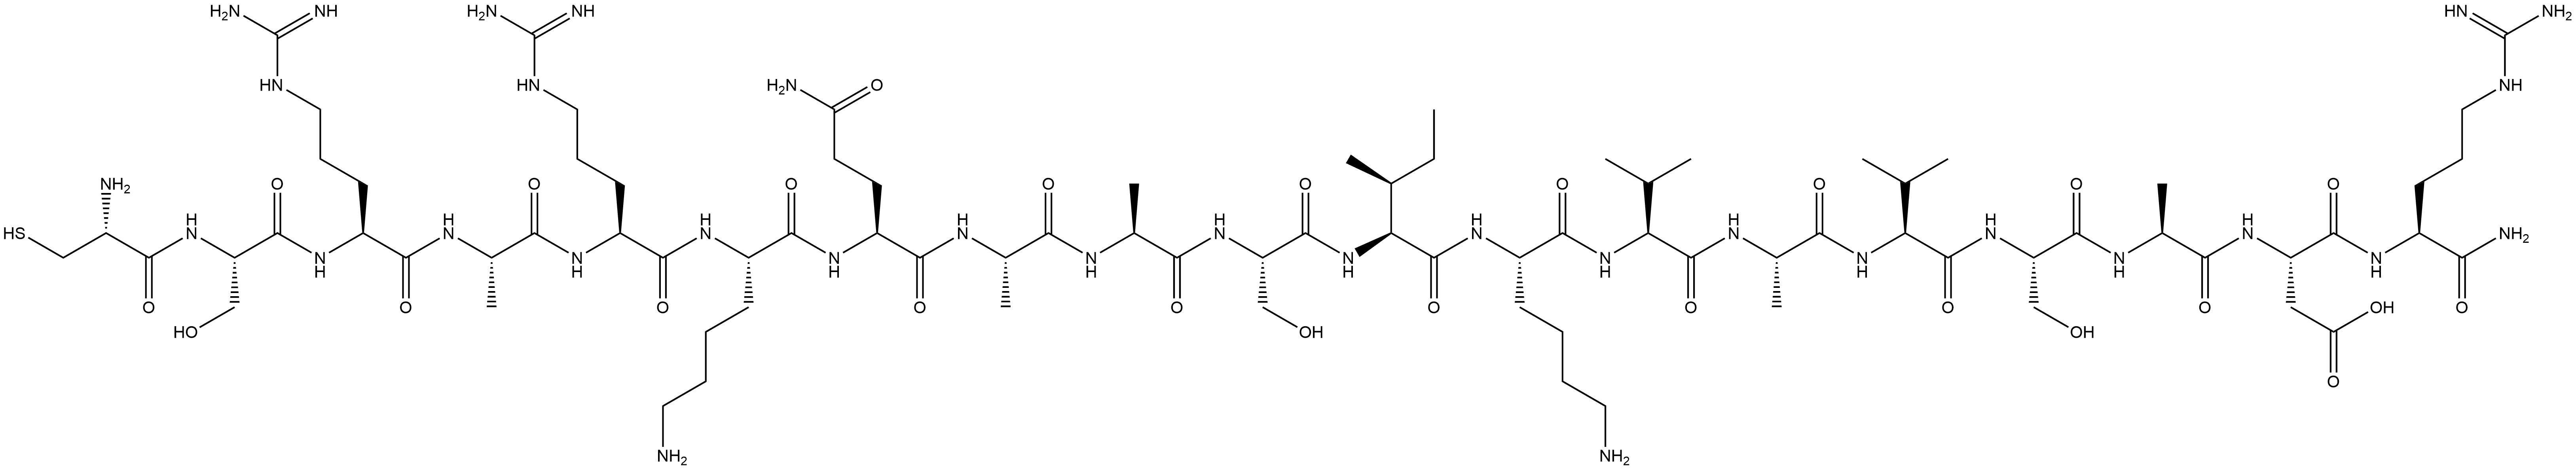 131435-36-4 活性肽PA22-2